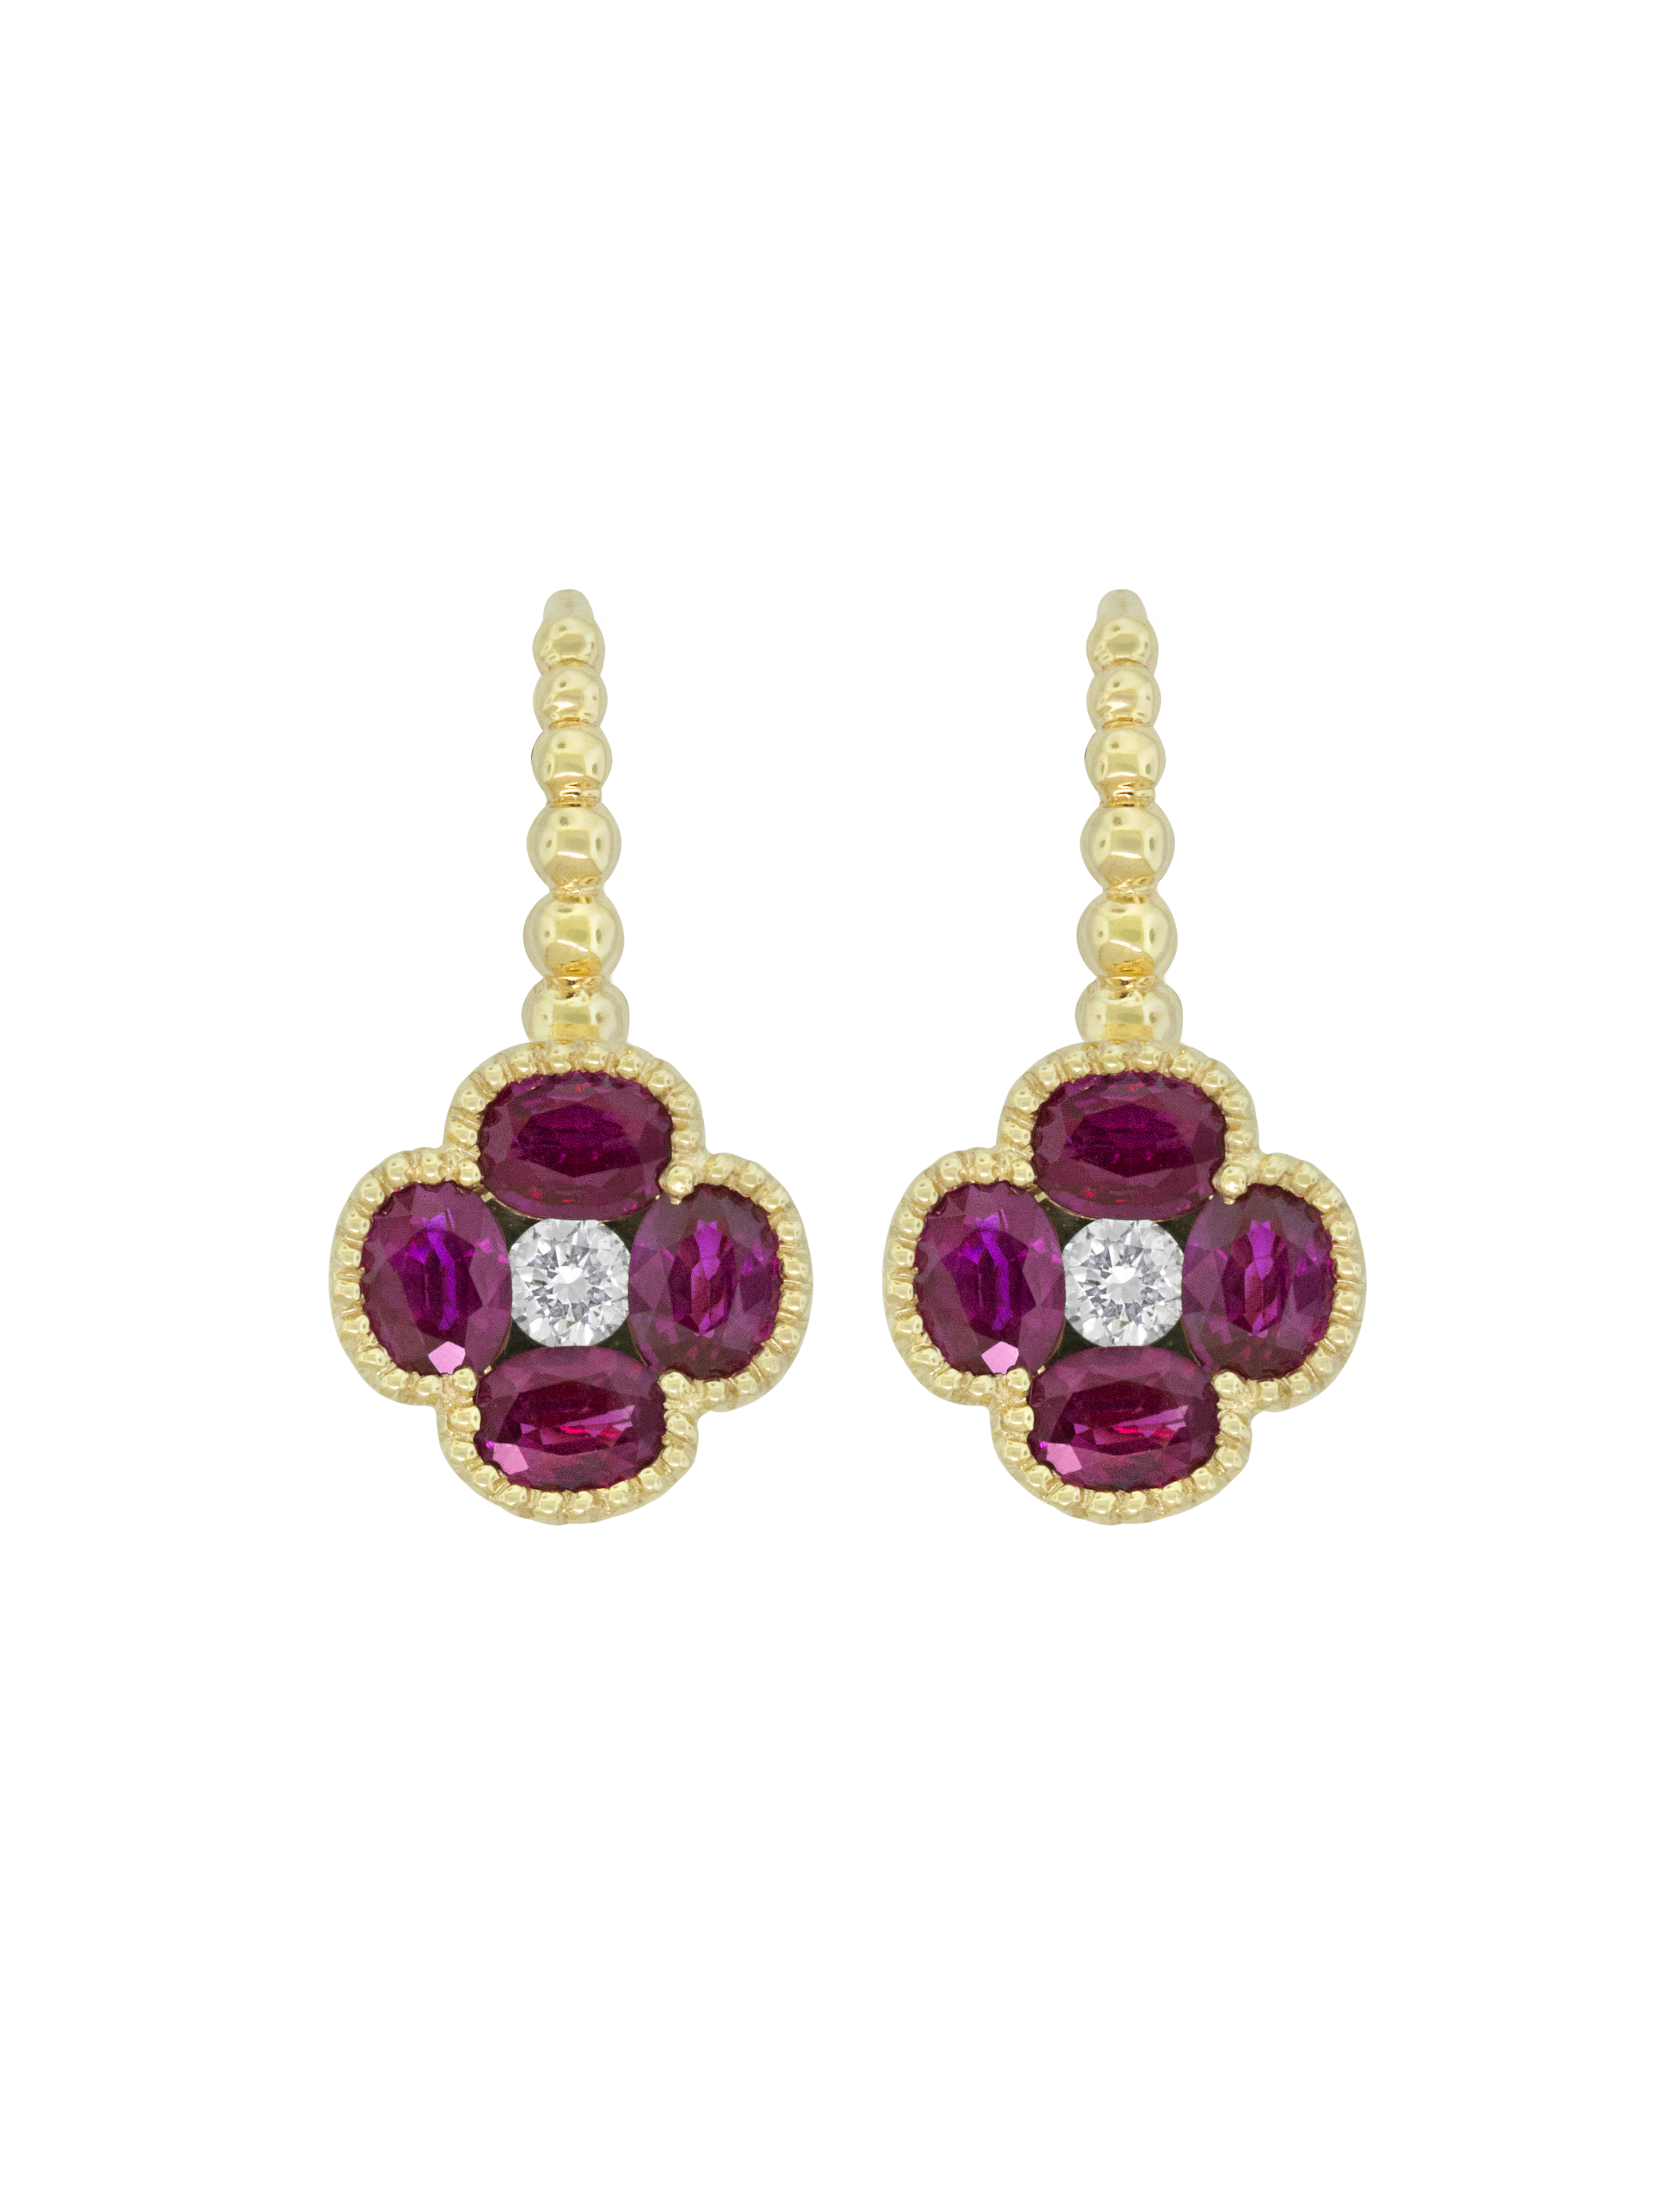 Ruby Flower Earrings